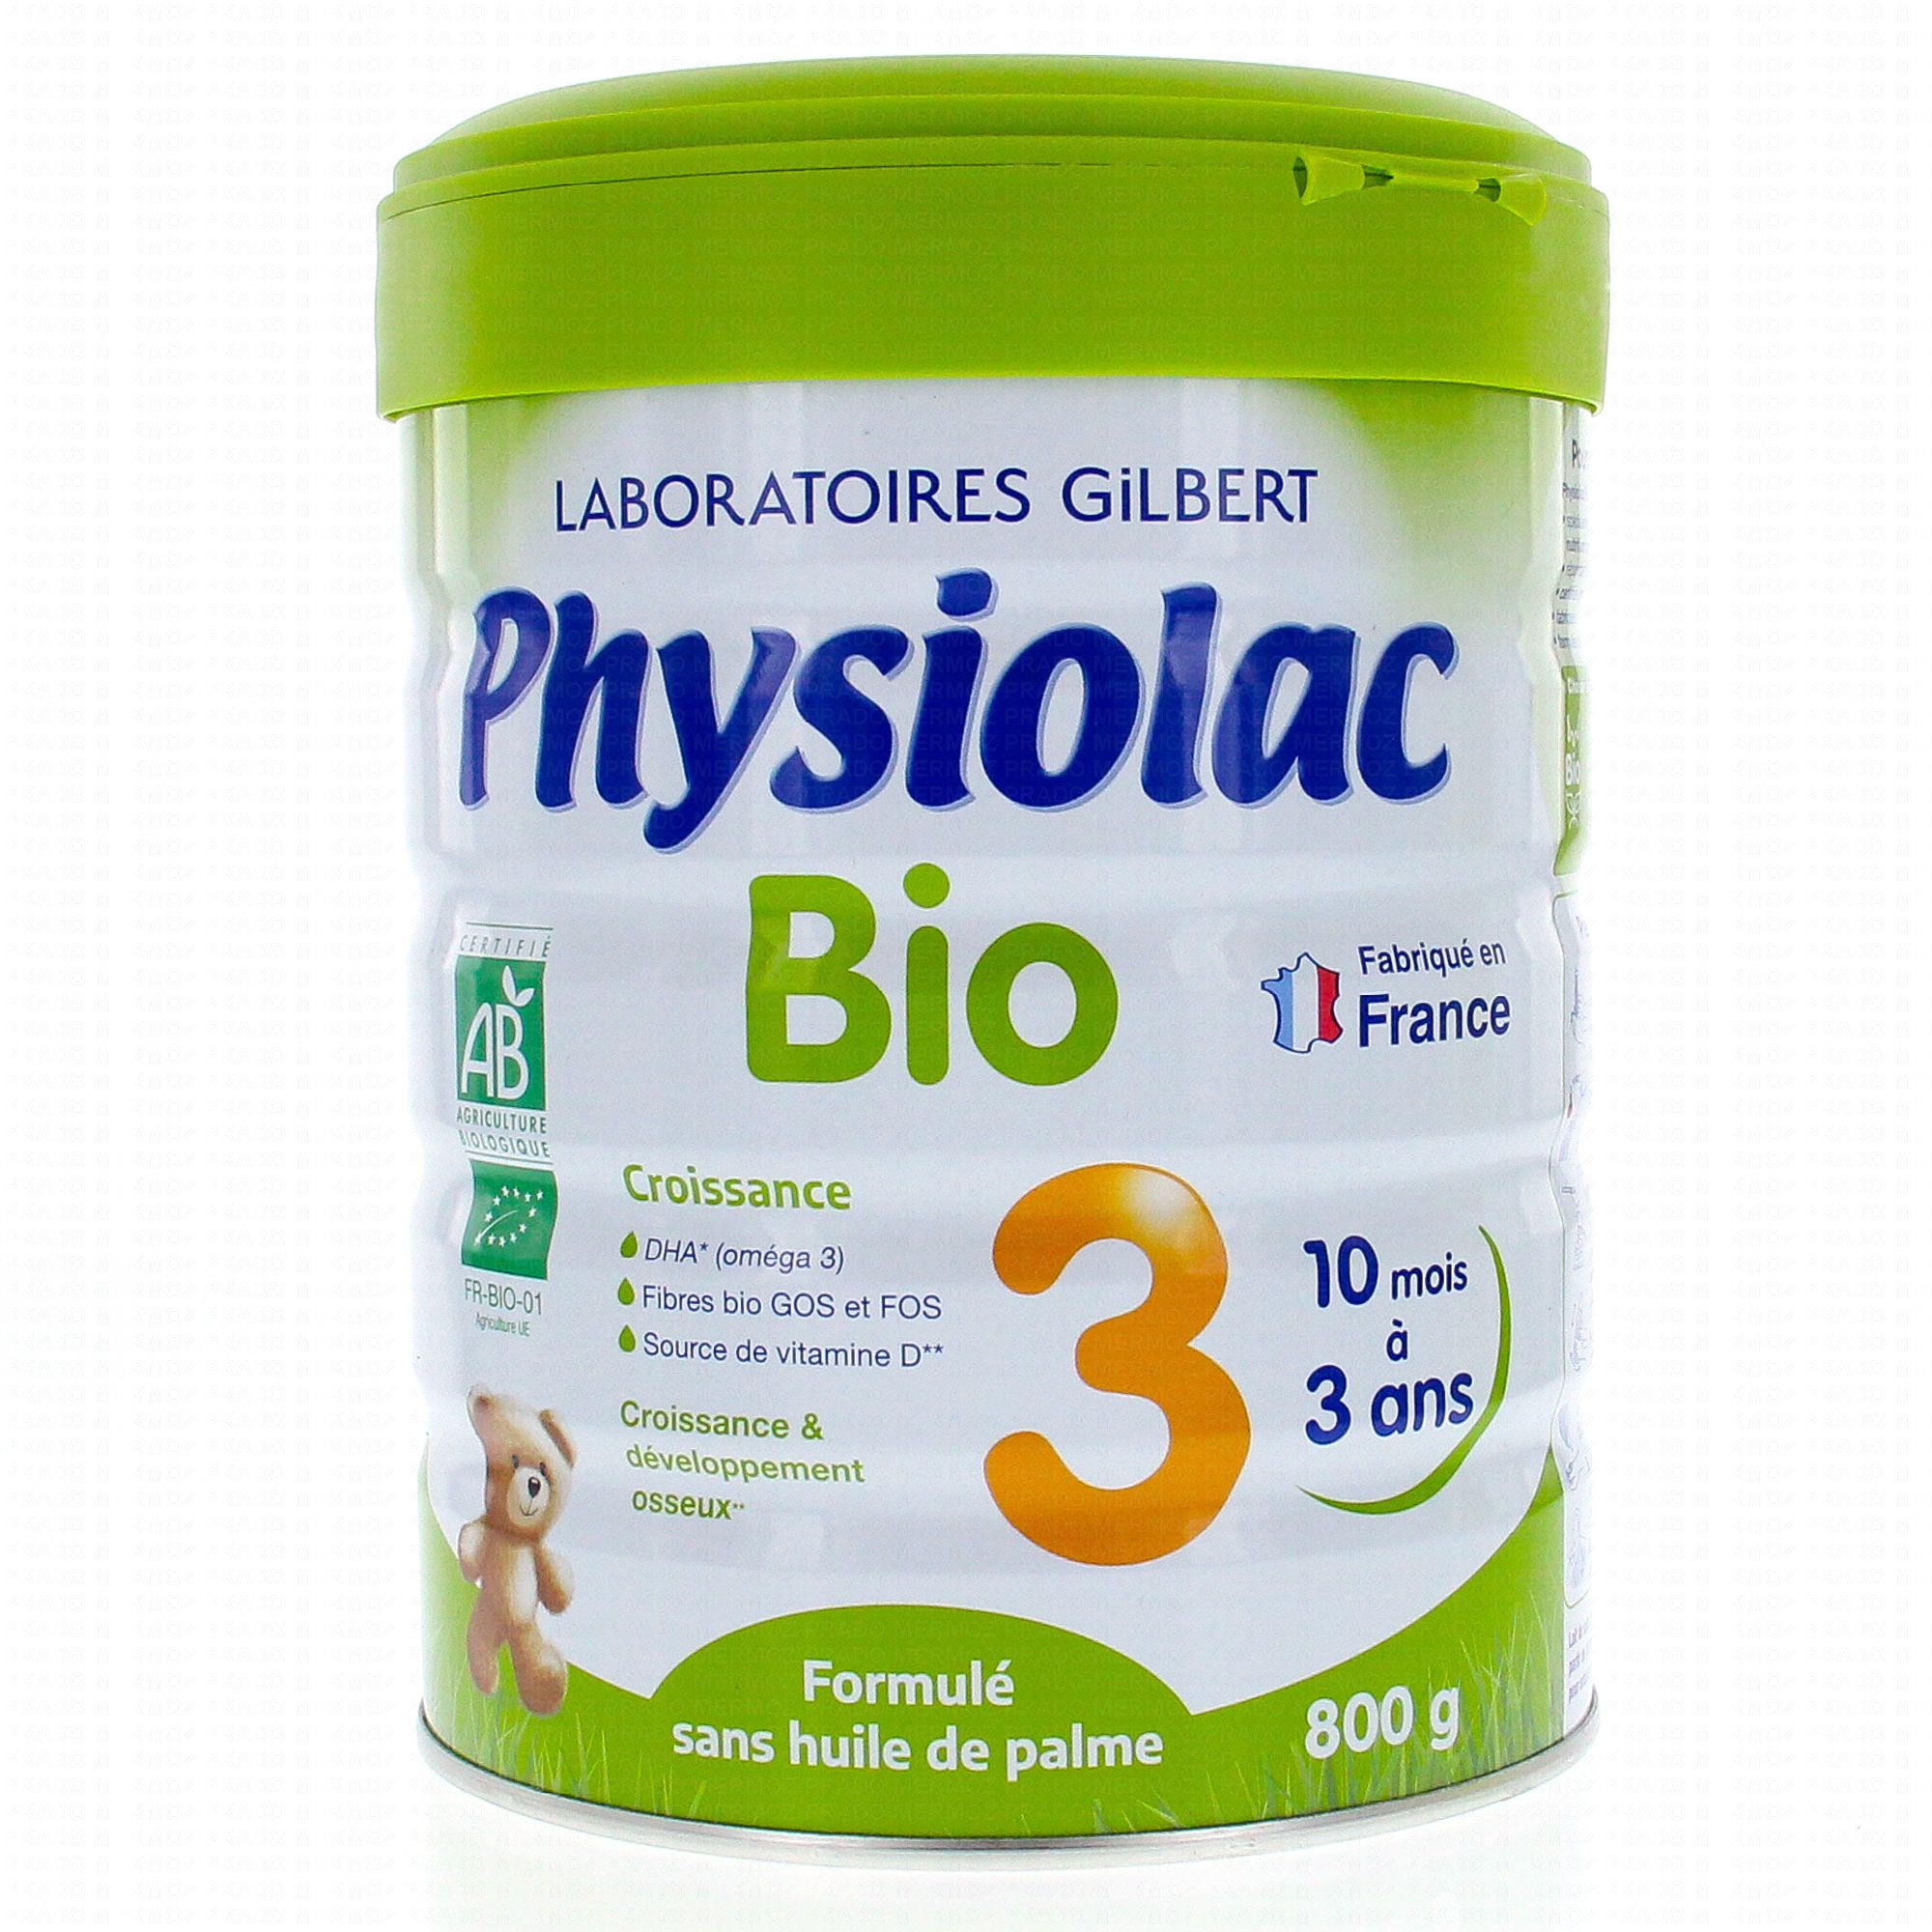 le lait bio 3 physiolac est un lait utilisé pour les bébés de 1 à